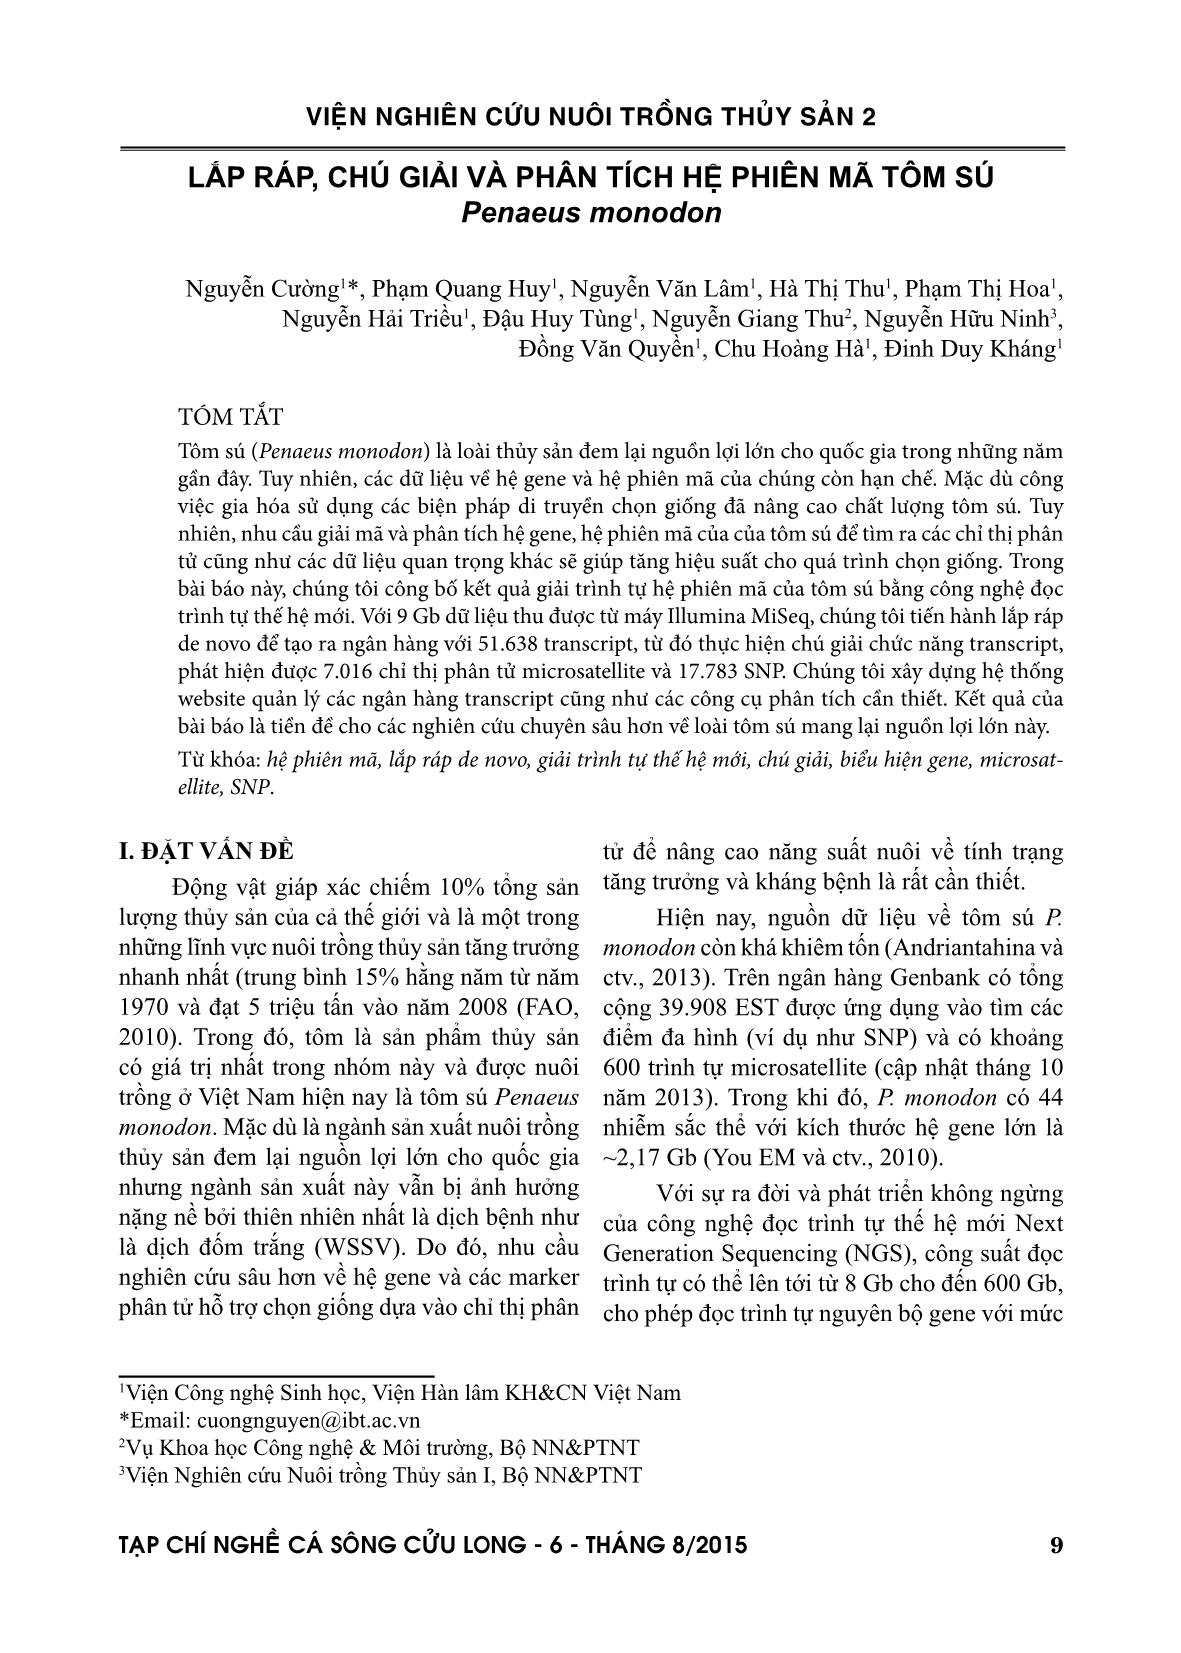 Tạp chí Nghề cá sông Cửu Long - Số 06/2015 trang 9